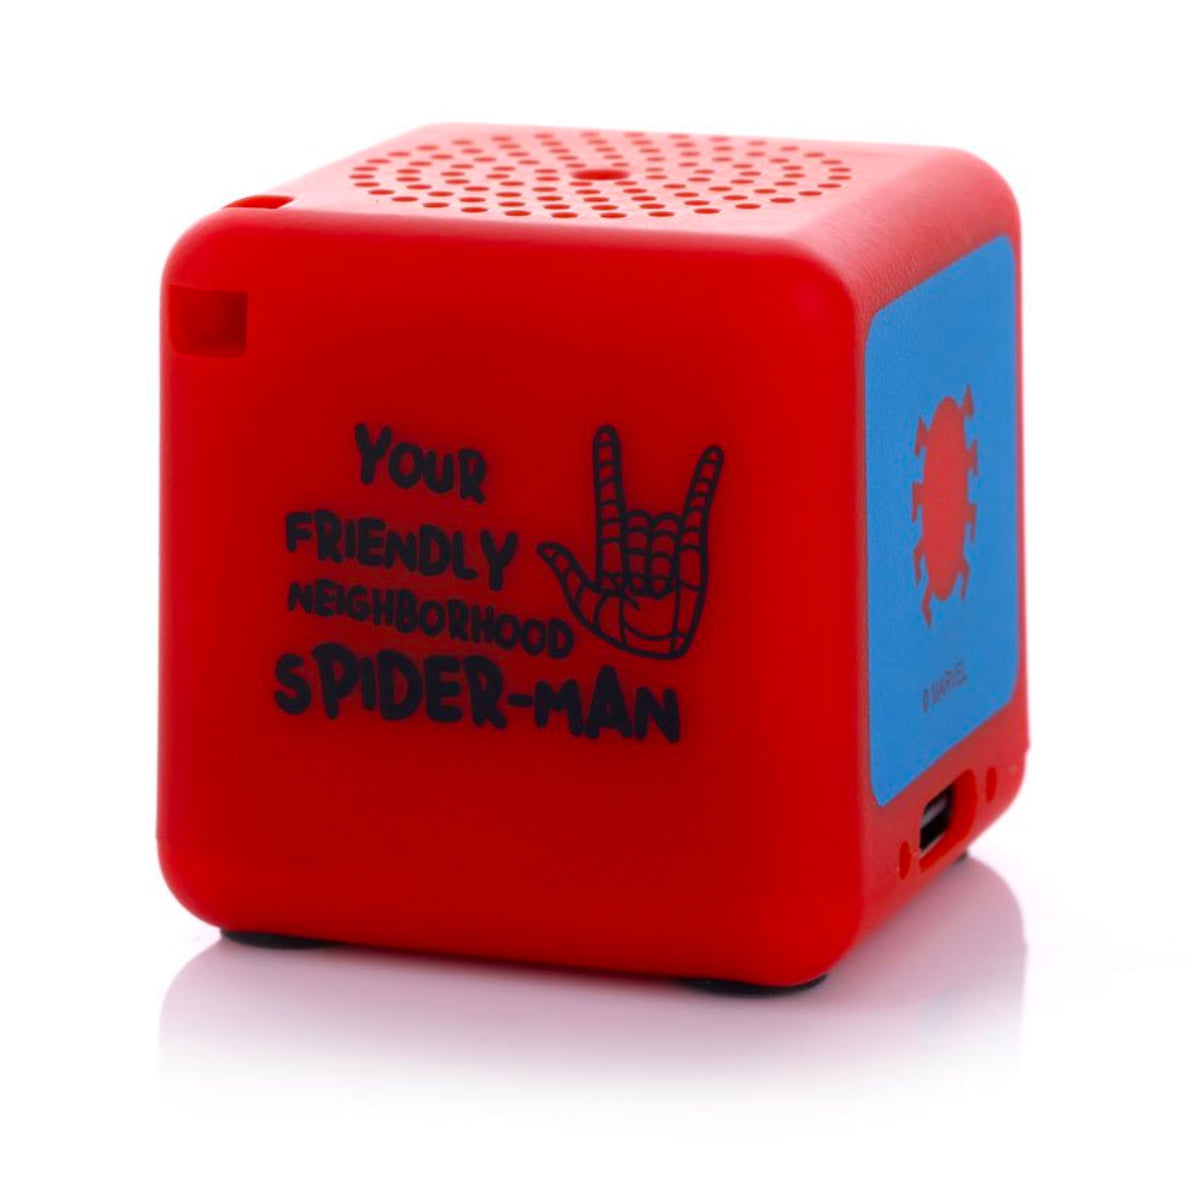 Bluetooth Speaker Bitty Box Marvel Spider-Man Keychain Speaker